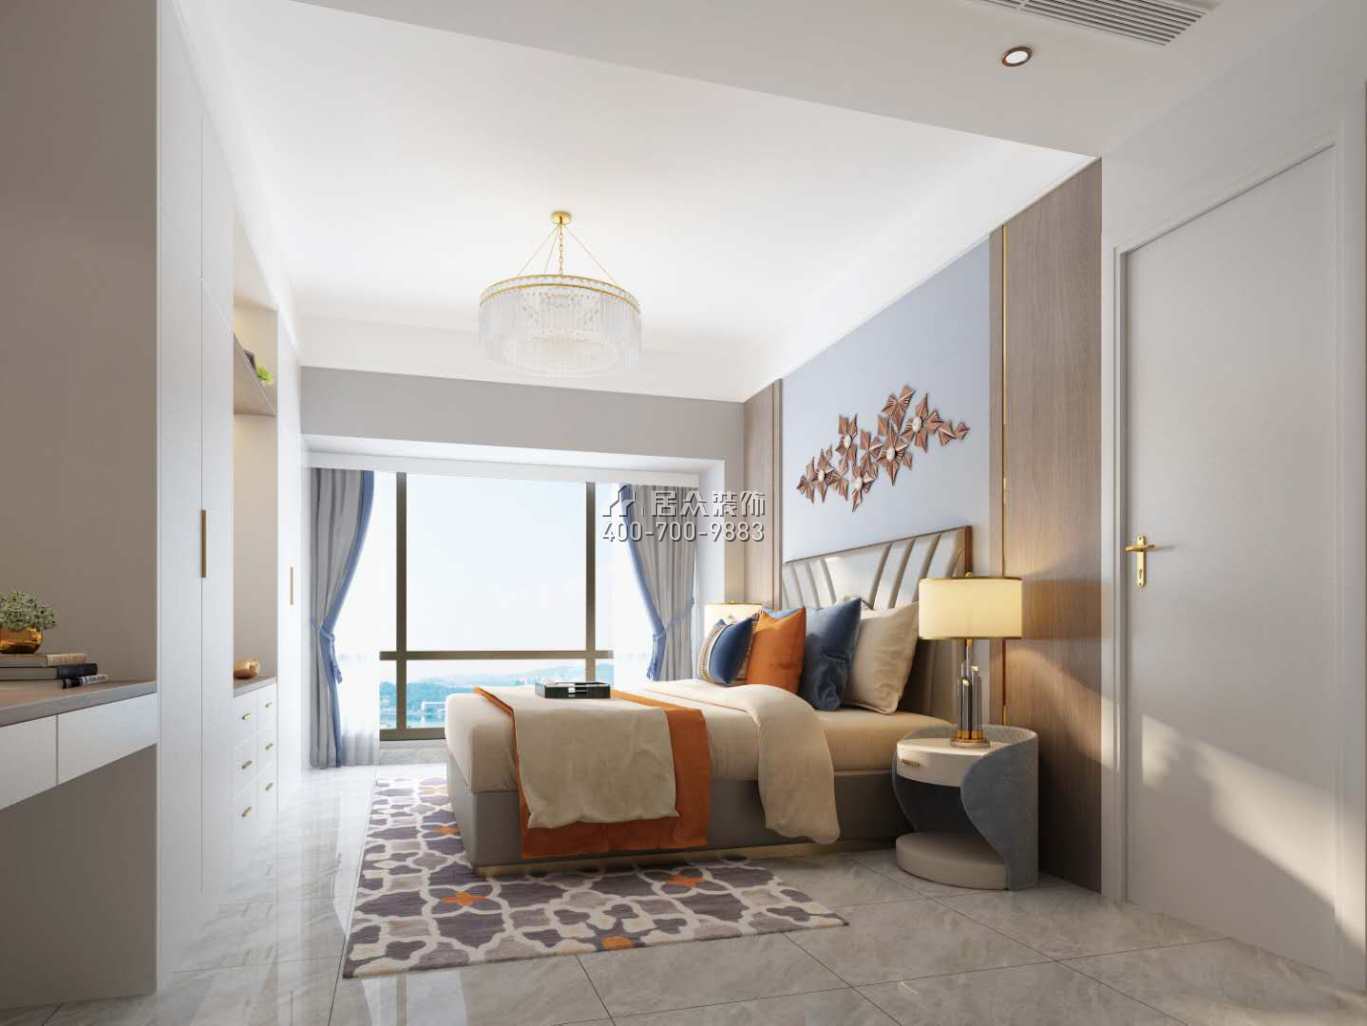 錦薈park137平方米現代簡約風格平層戶型臥室裝修效果圖